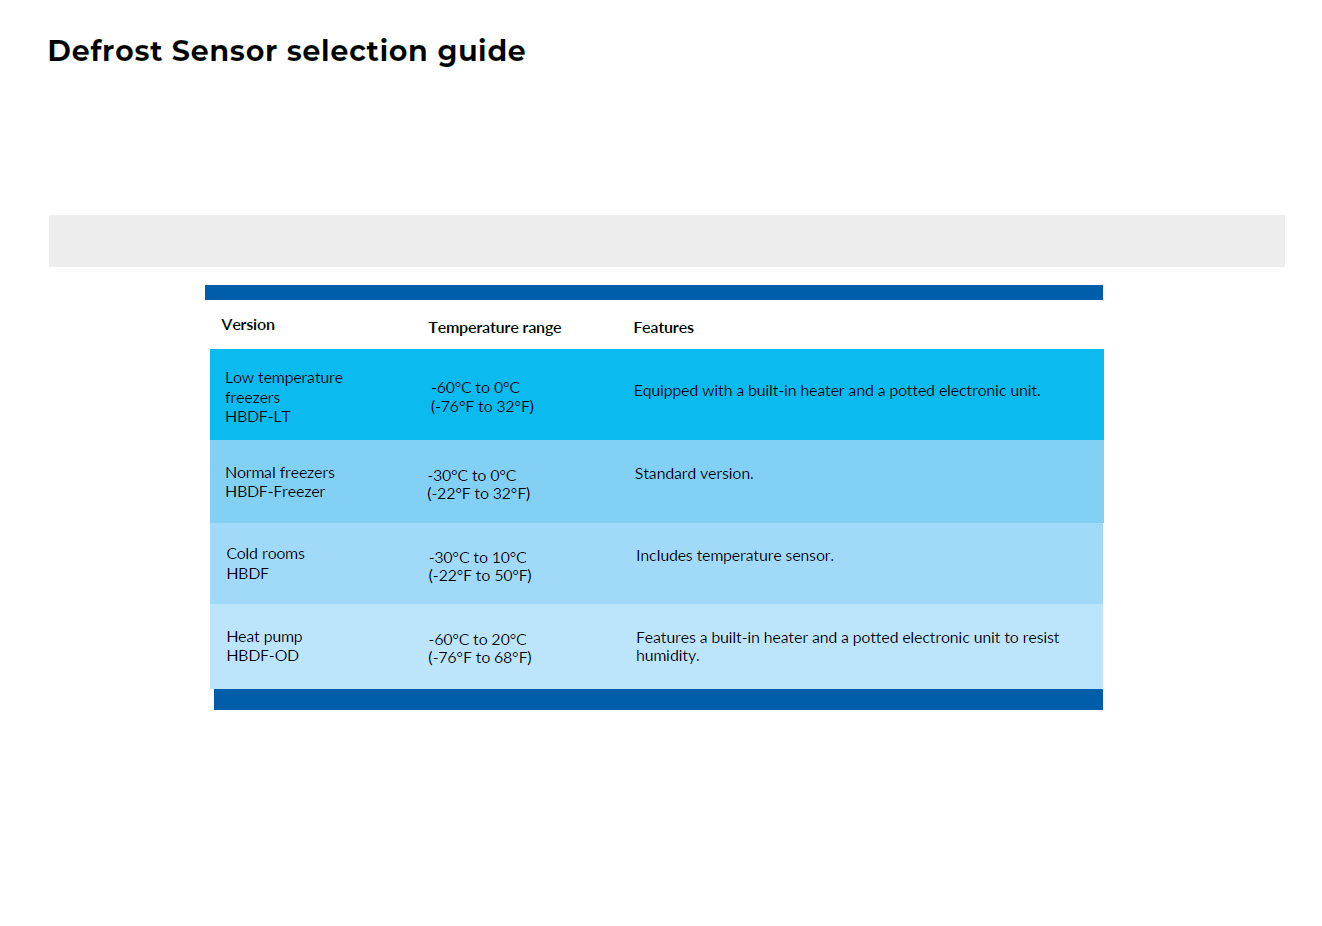 Defrost Sensor - Selection guide